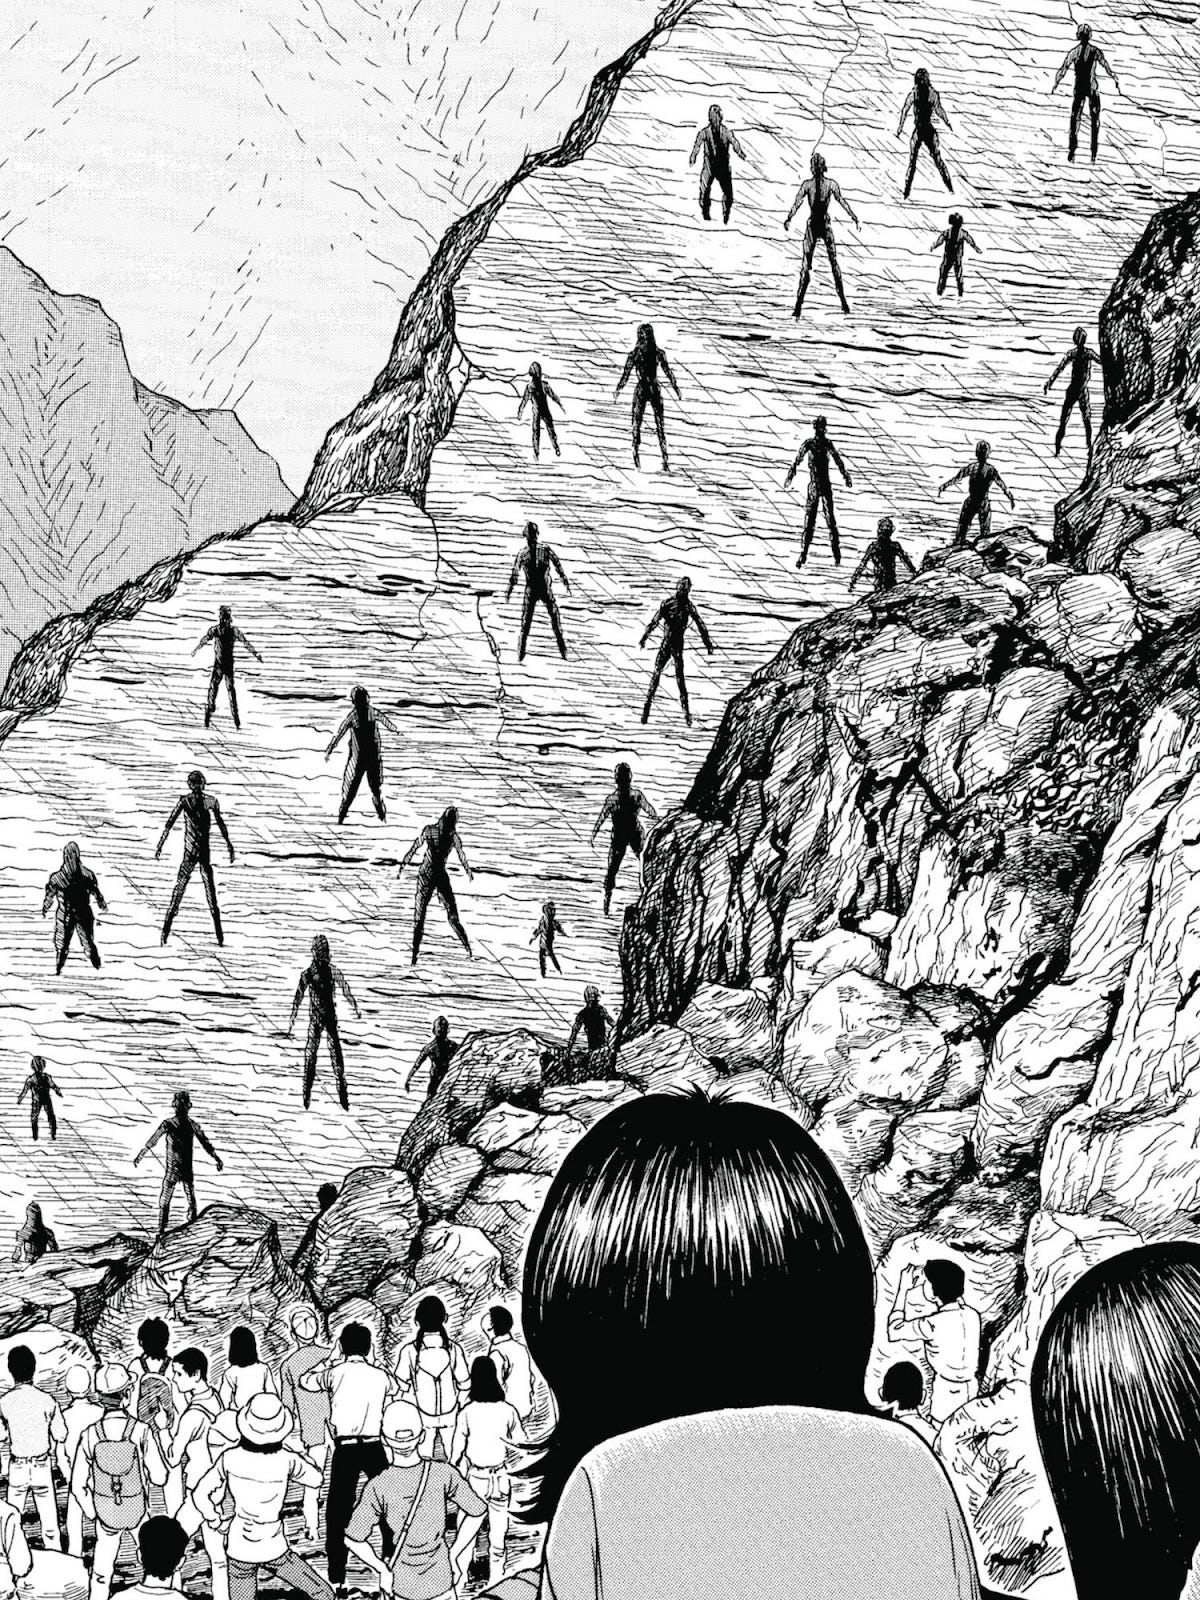 uma ilustração em preto e branco mostra, em primeiro plano, duas cabeças de costas olhando para uma montanha, onde diversos vultos em forma humana parecem estar indo em direção aos personagens de forma assustadora.